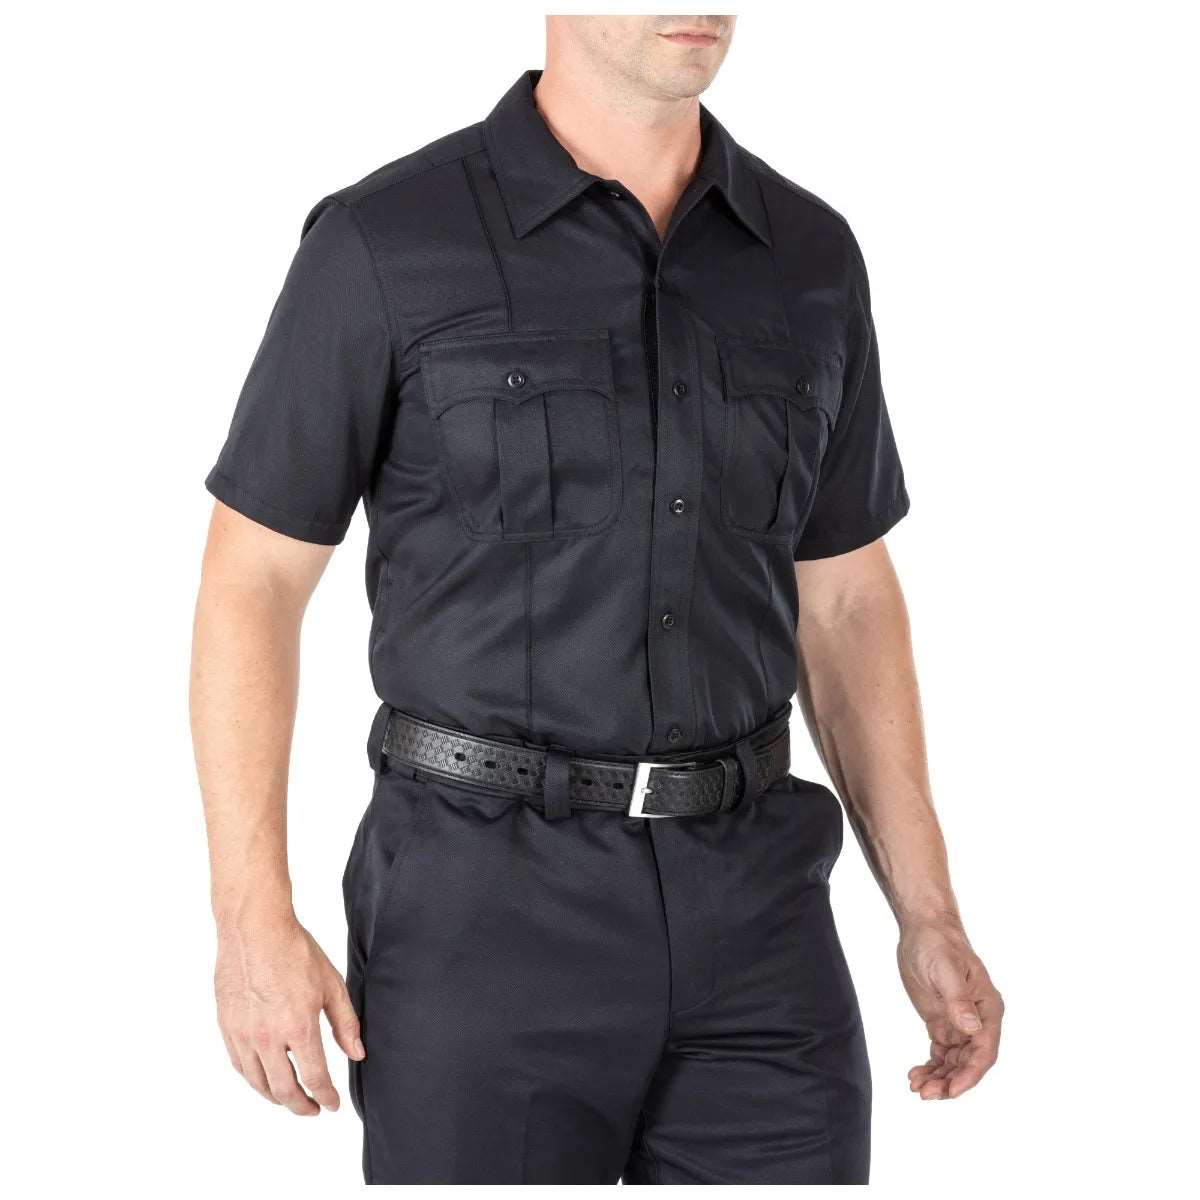 Tops - 5.11 Tactical Class A Fast-Tac TWILL Short Sleeve Shirt